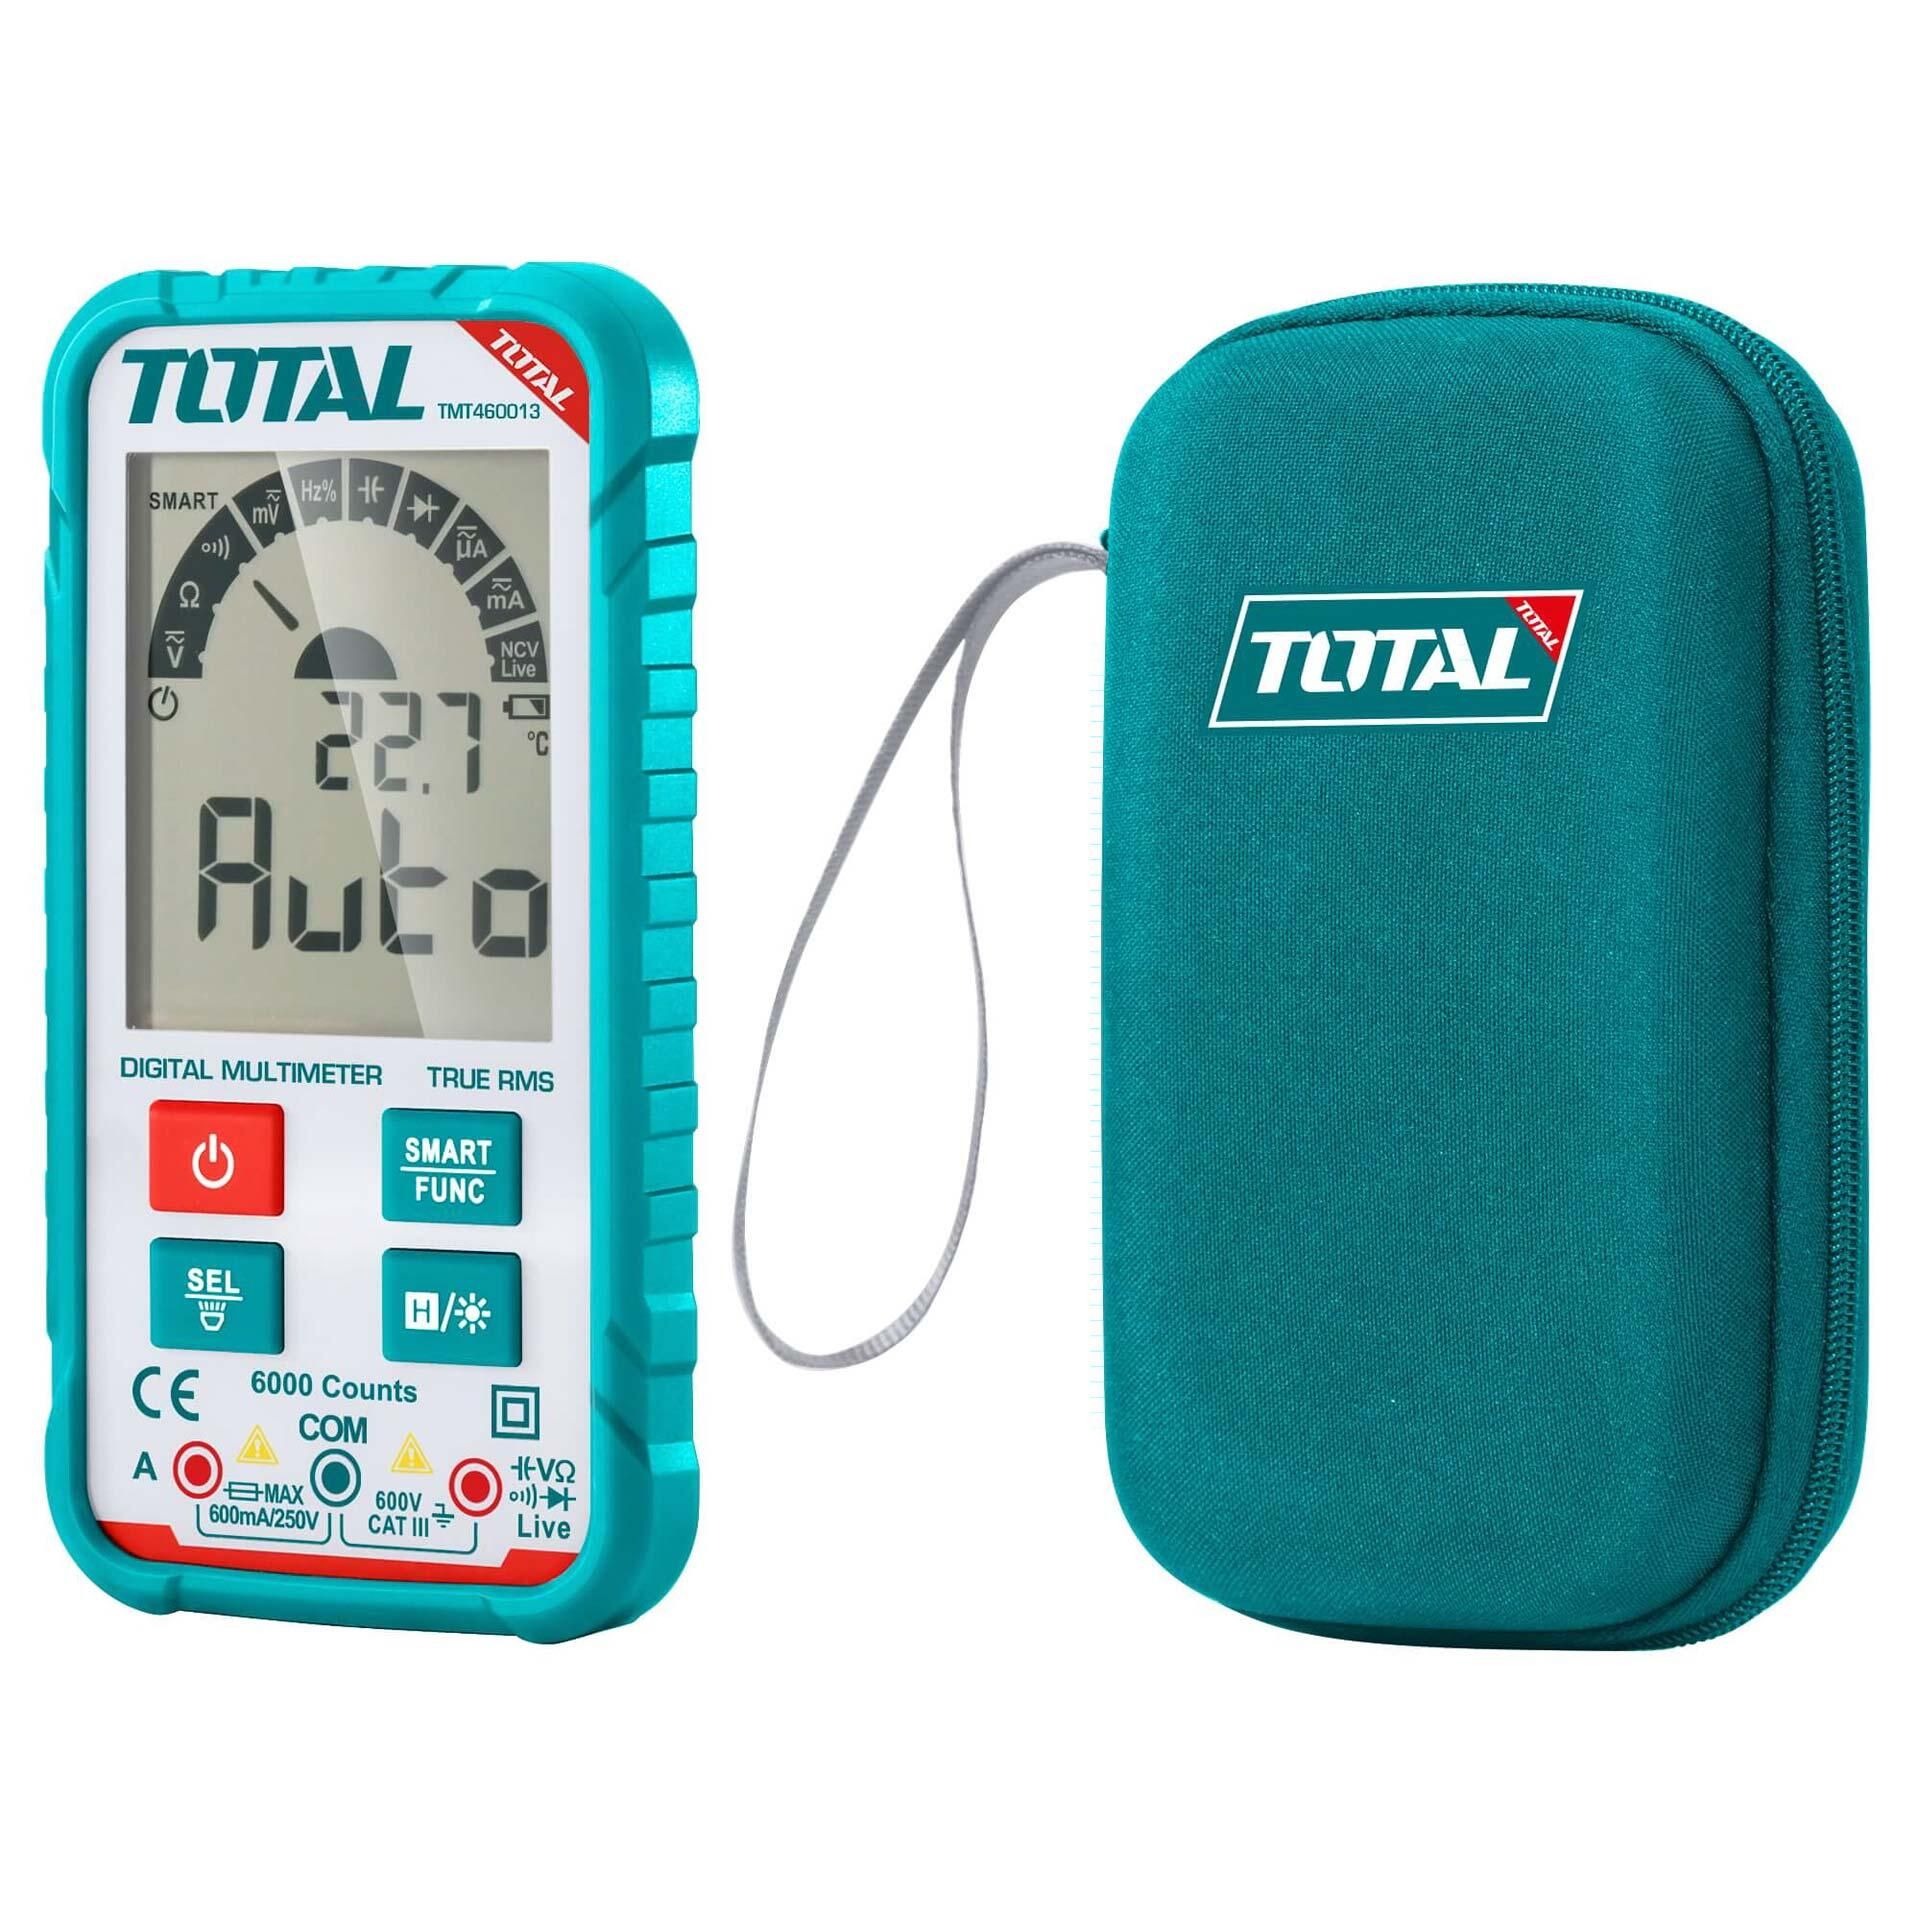  Đồng hồ đo điện vạn năng Total TMT460013 